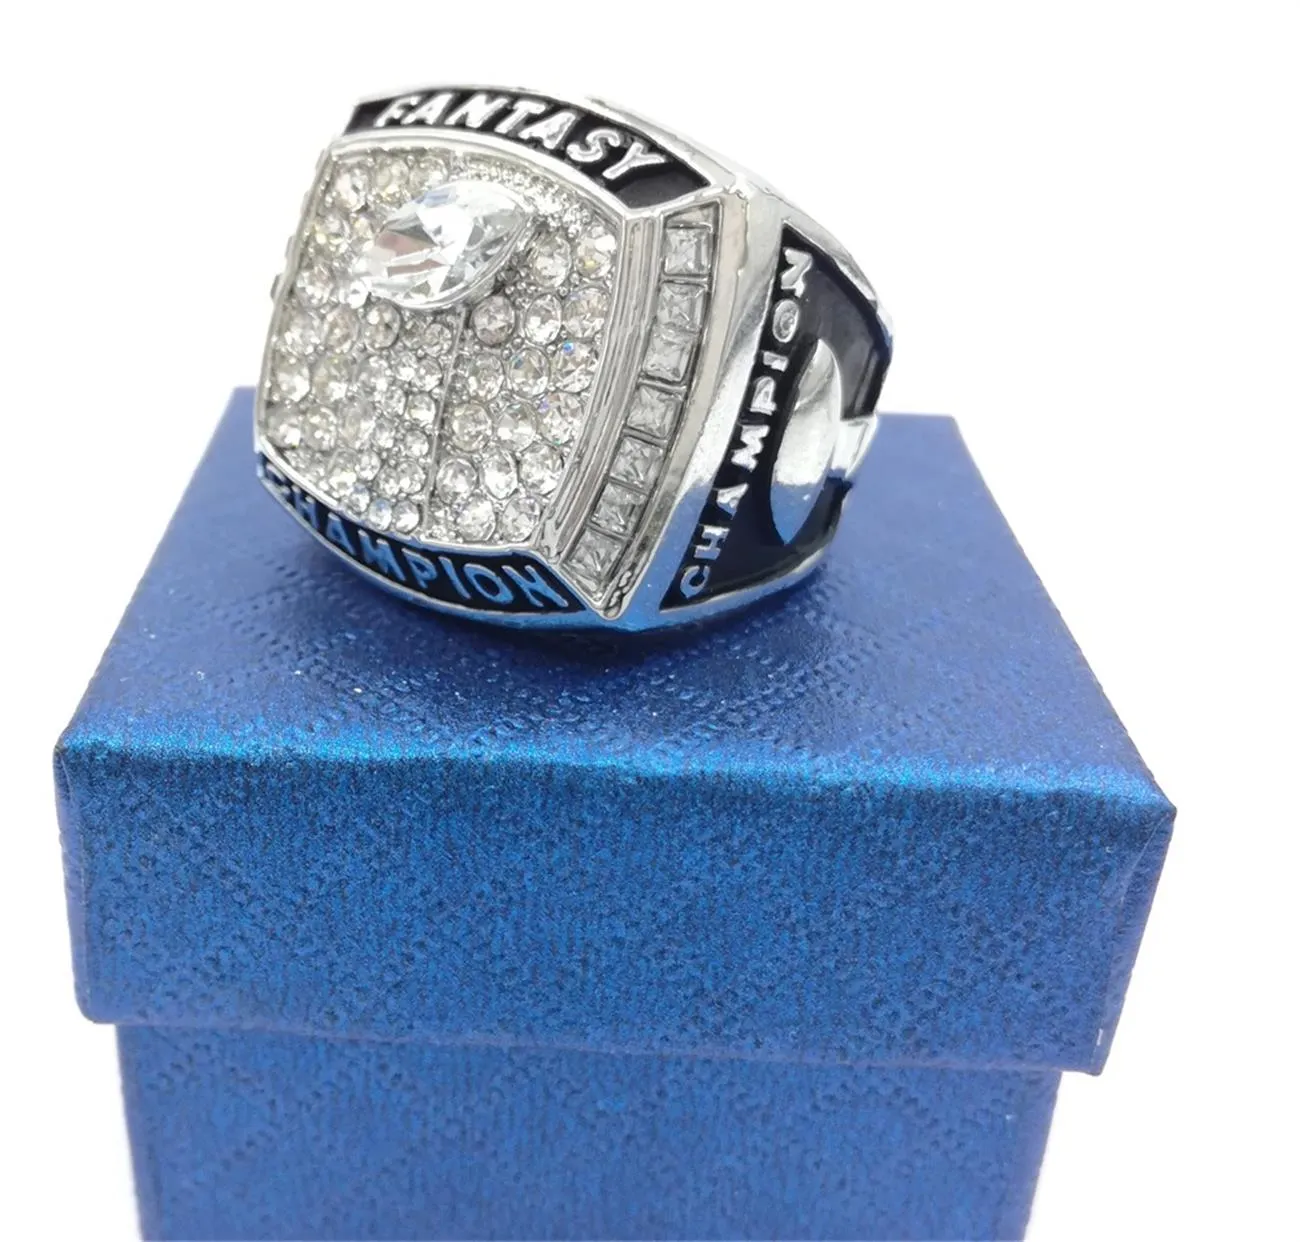 Отличное качество 2021, кольцо чемпионата фэнтези-футбольной лиги, фанатское кольцо для мужчин и женщин, подарочное кольцо, размер 8-13203x